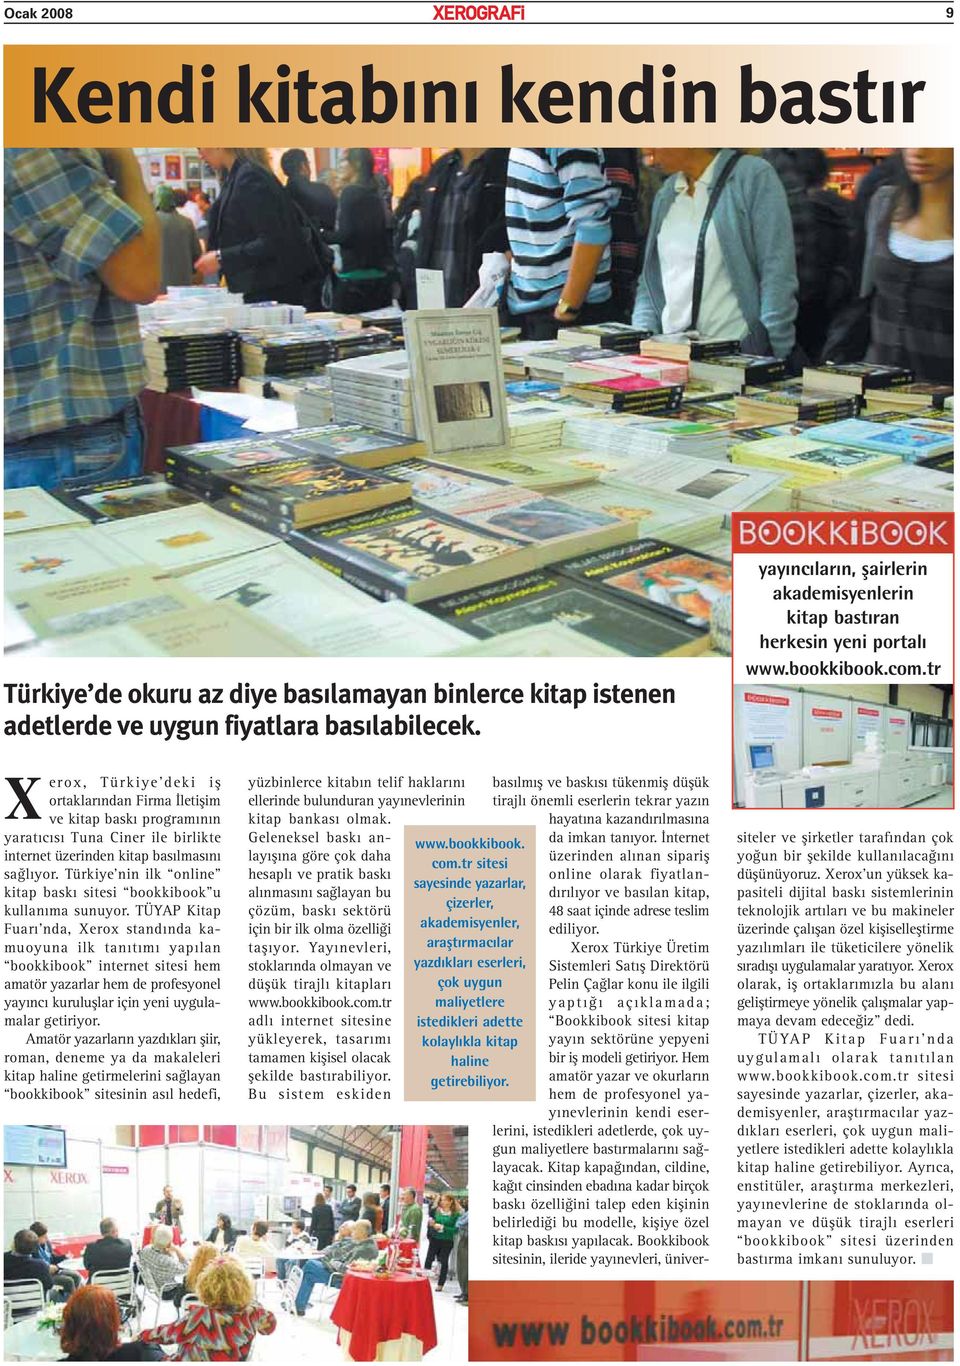 tr Xerox, Türkiye deki iş ortaklarından Firma İletişim ve kitap baskı programının yaratıcısı Tuna Ciner ile birlikte internet üzerinden kitap basılmasını sağlıyor.